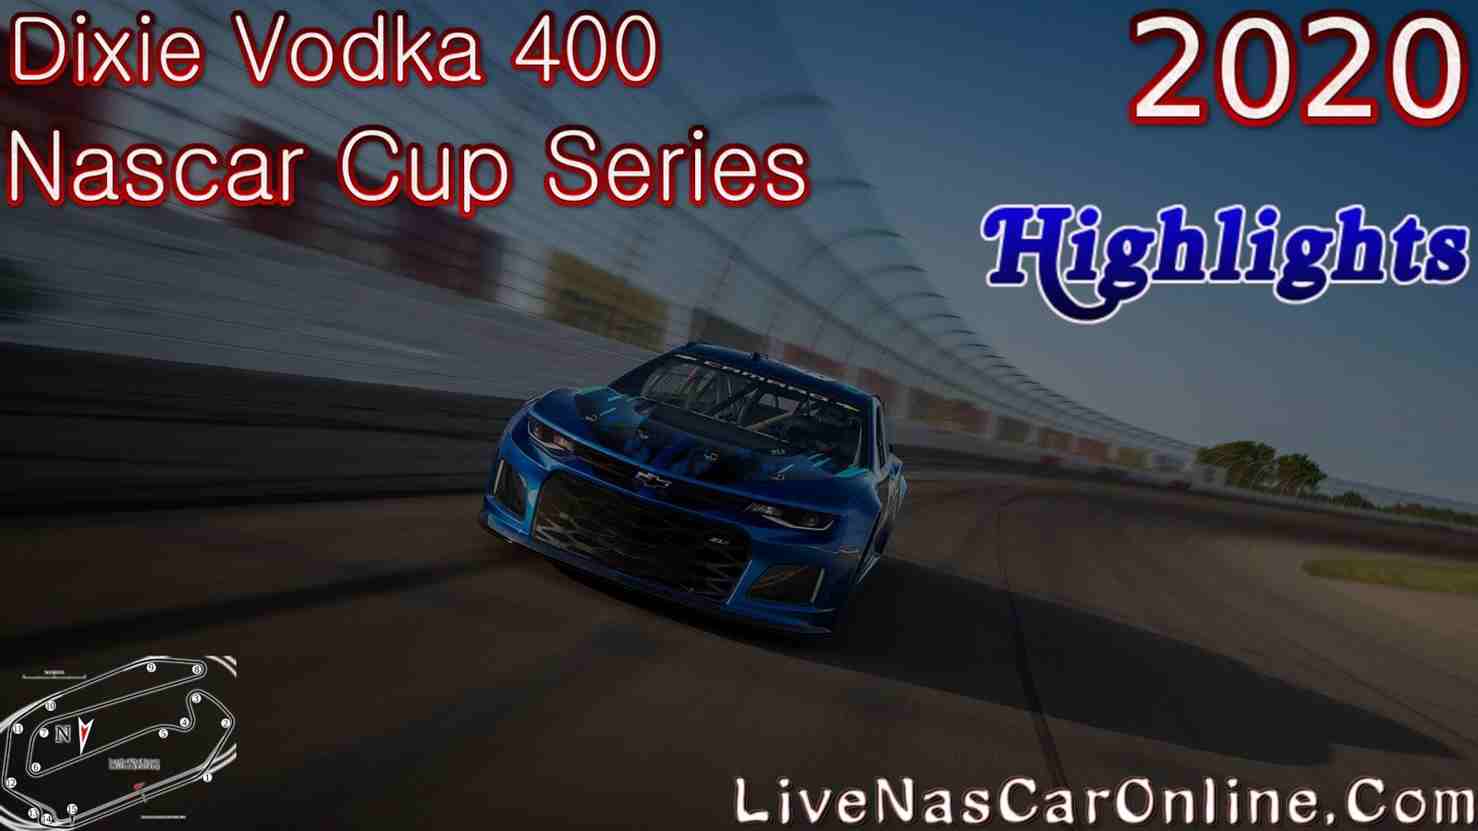 Dixie Vodka 400 Nascar Cup Highlights 2020